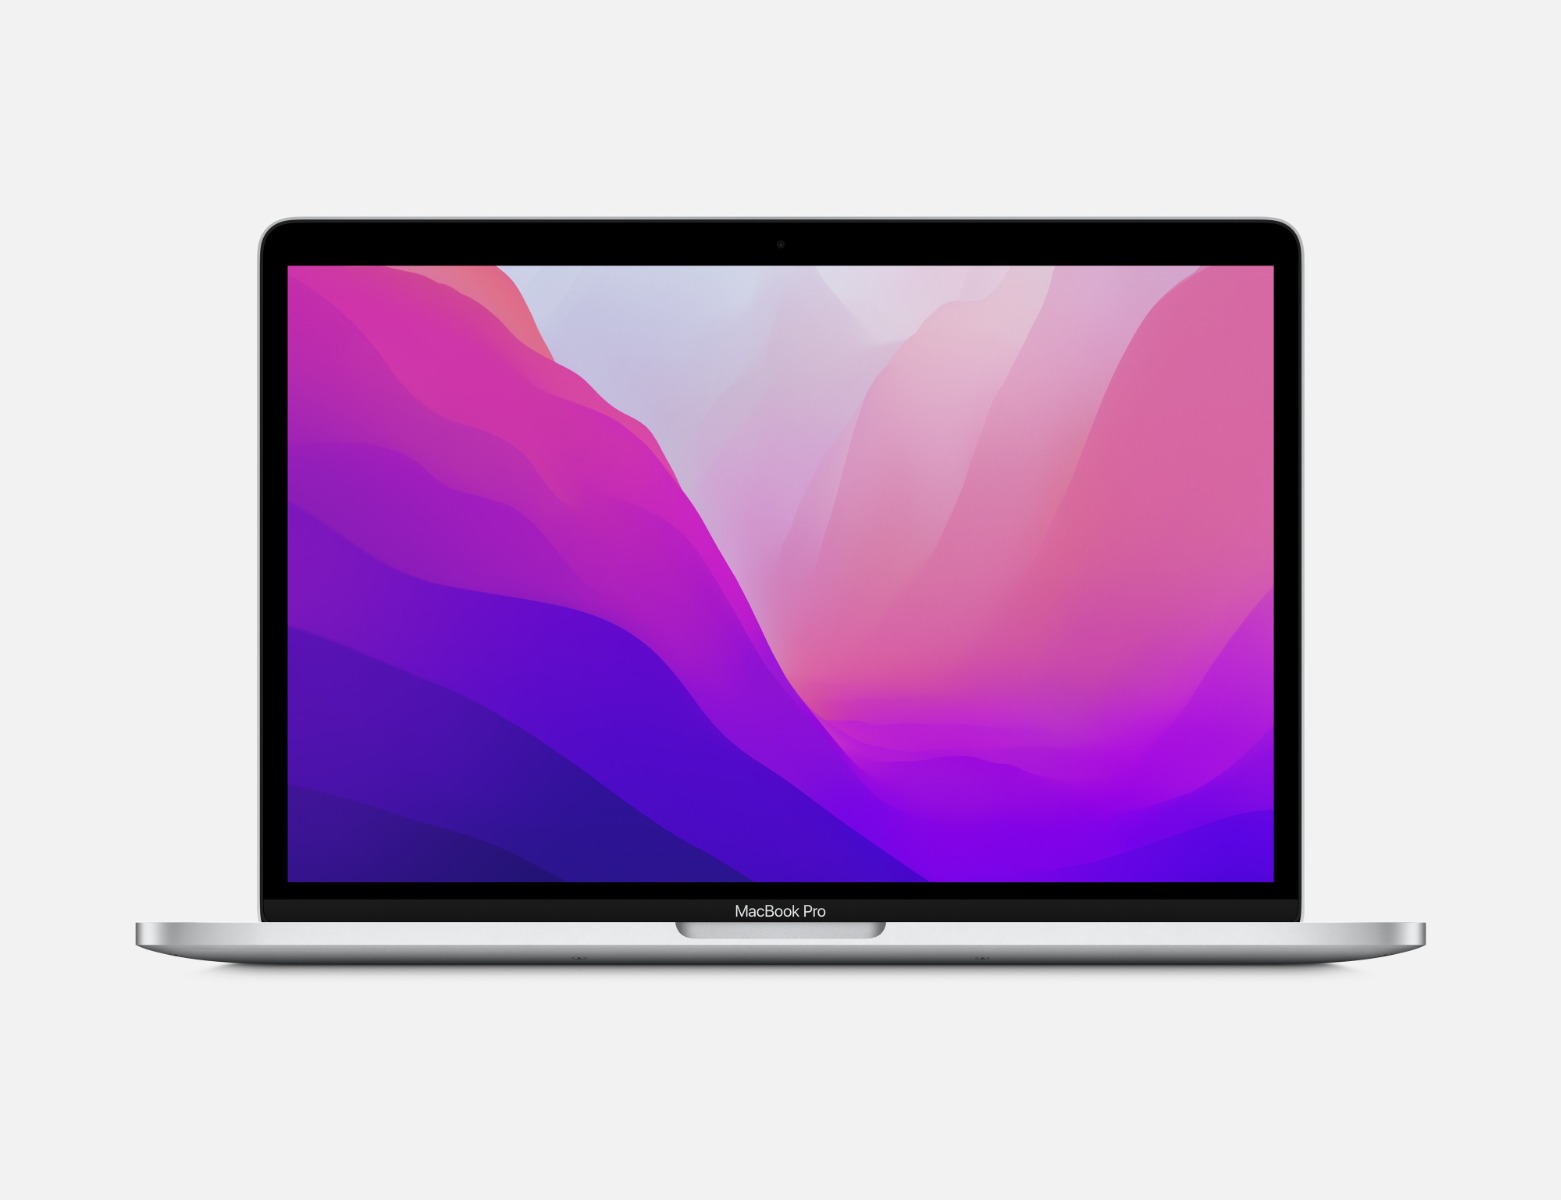 13-inch MacBook Pro: Apple M2 chip with 8 core CPU, 10 core GPU, 16 core Neural Engine